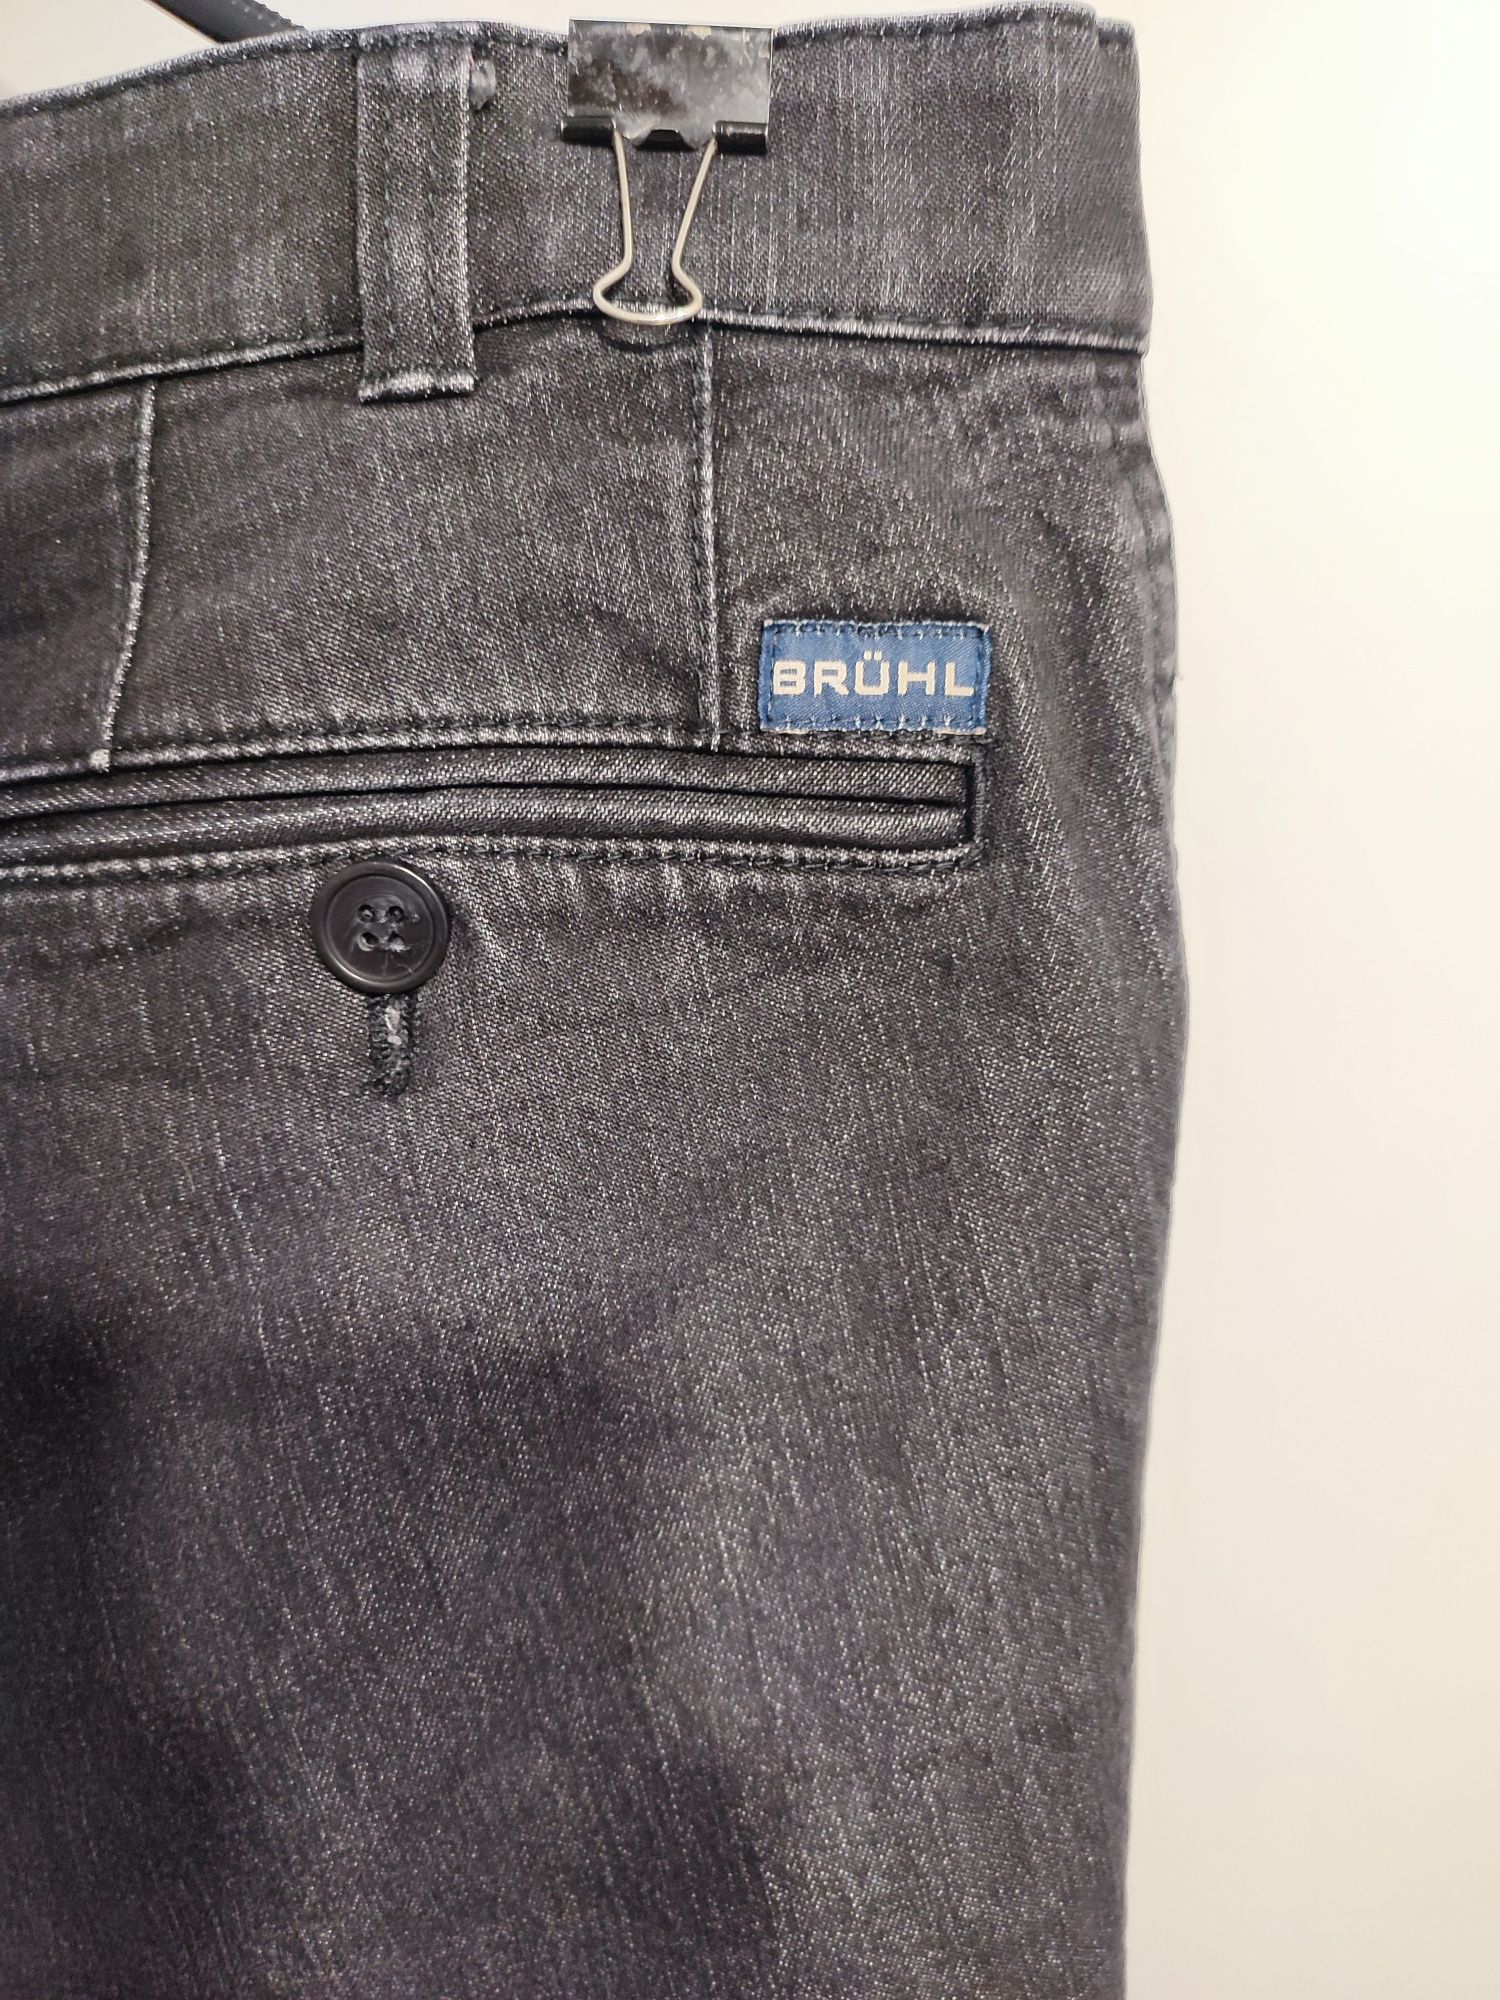 Spodnie jeansy dżinsy Czarne Bruhl Eu  46 / 30